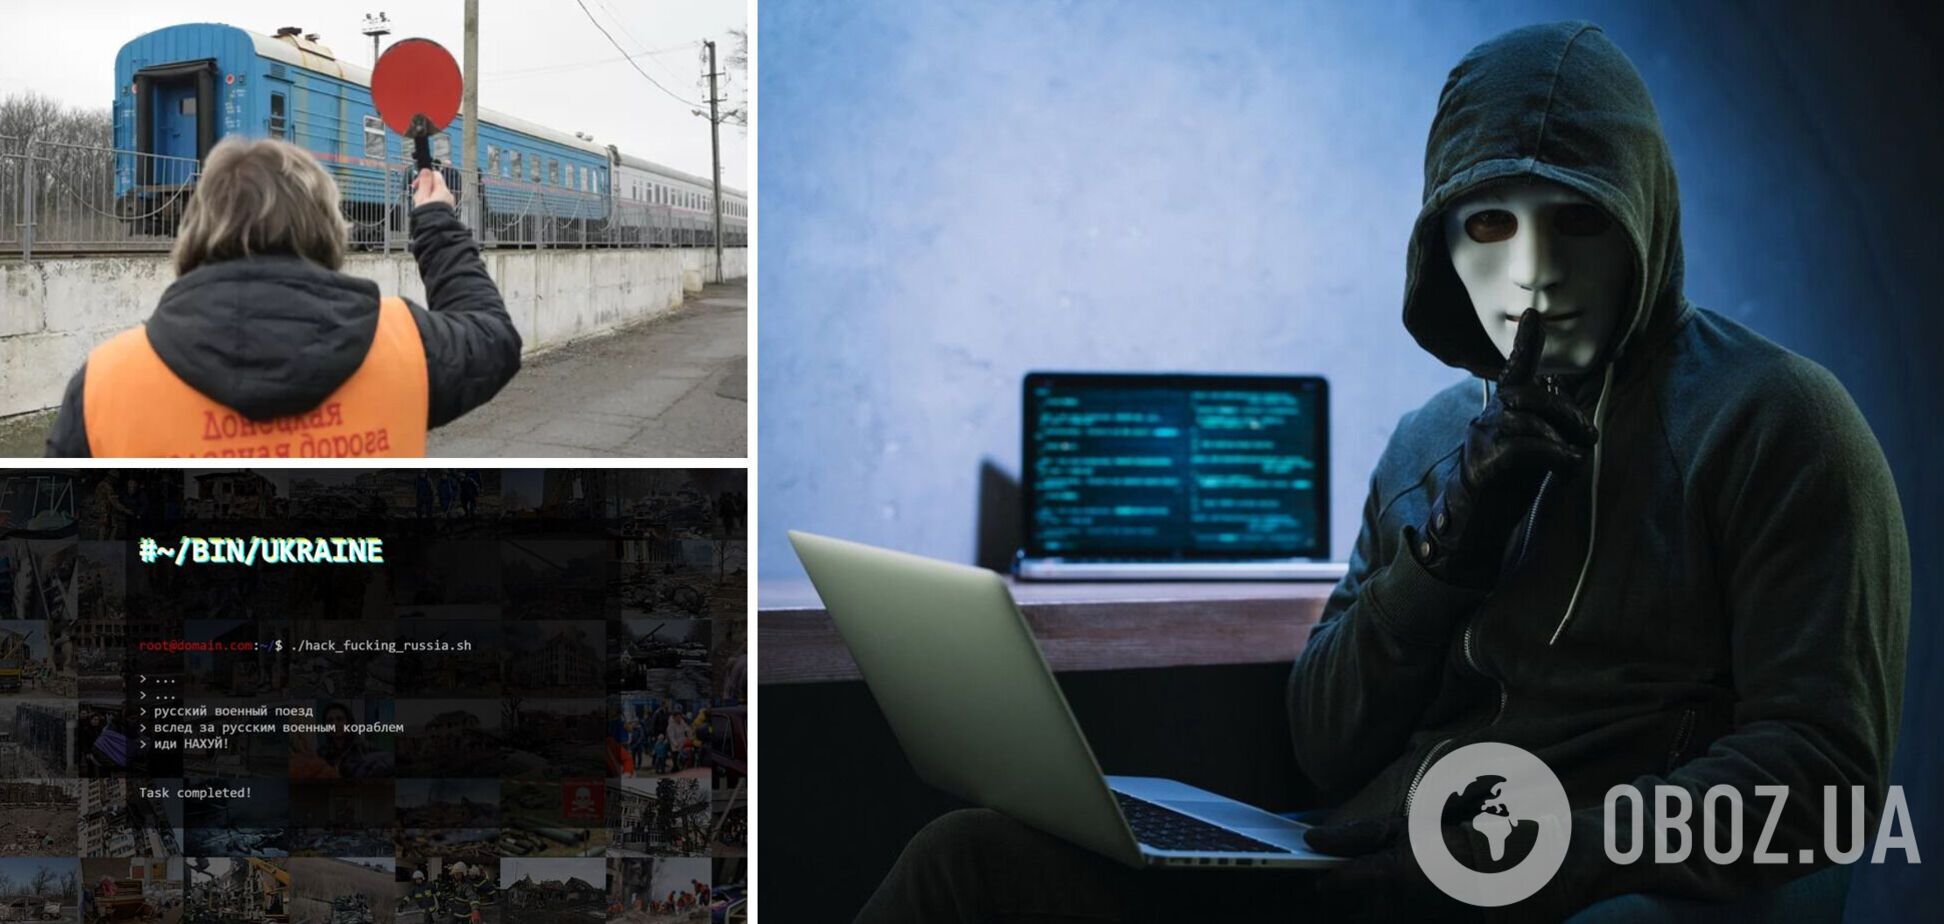 Українські хакери зламали сайт залізниці 'ДНР' і залишили послання для російського воєнного поїзда. Фото